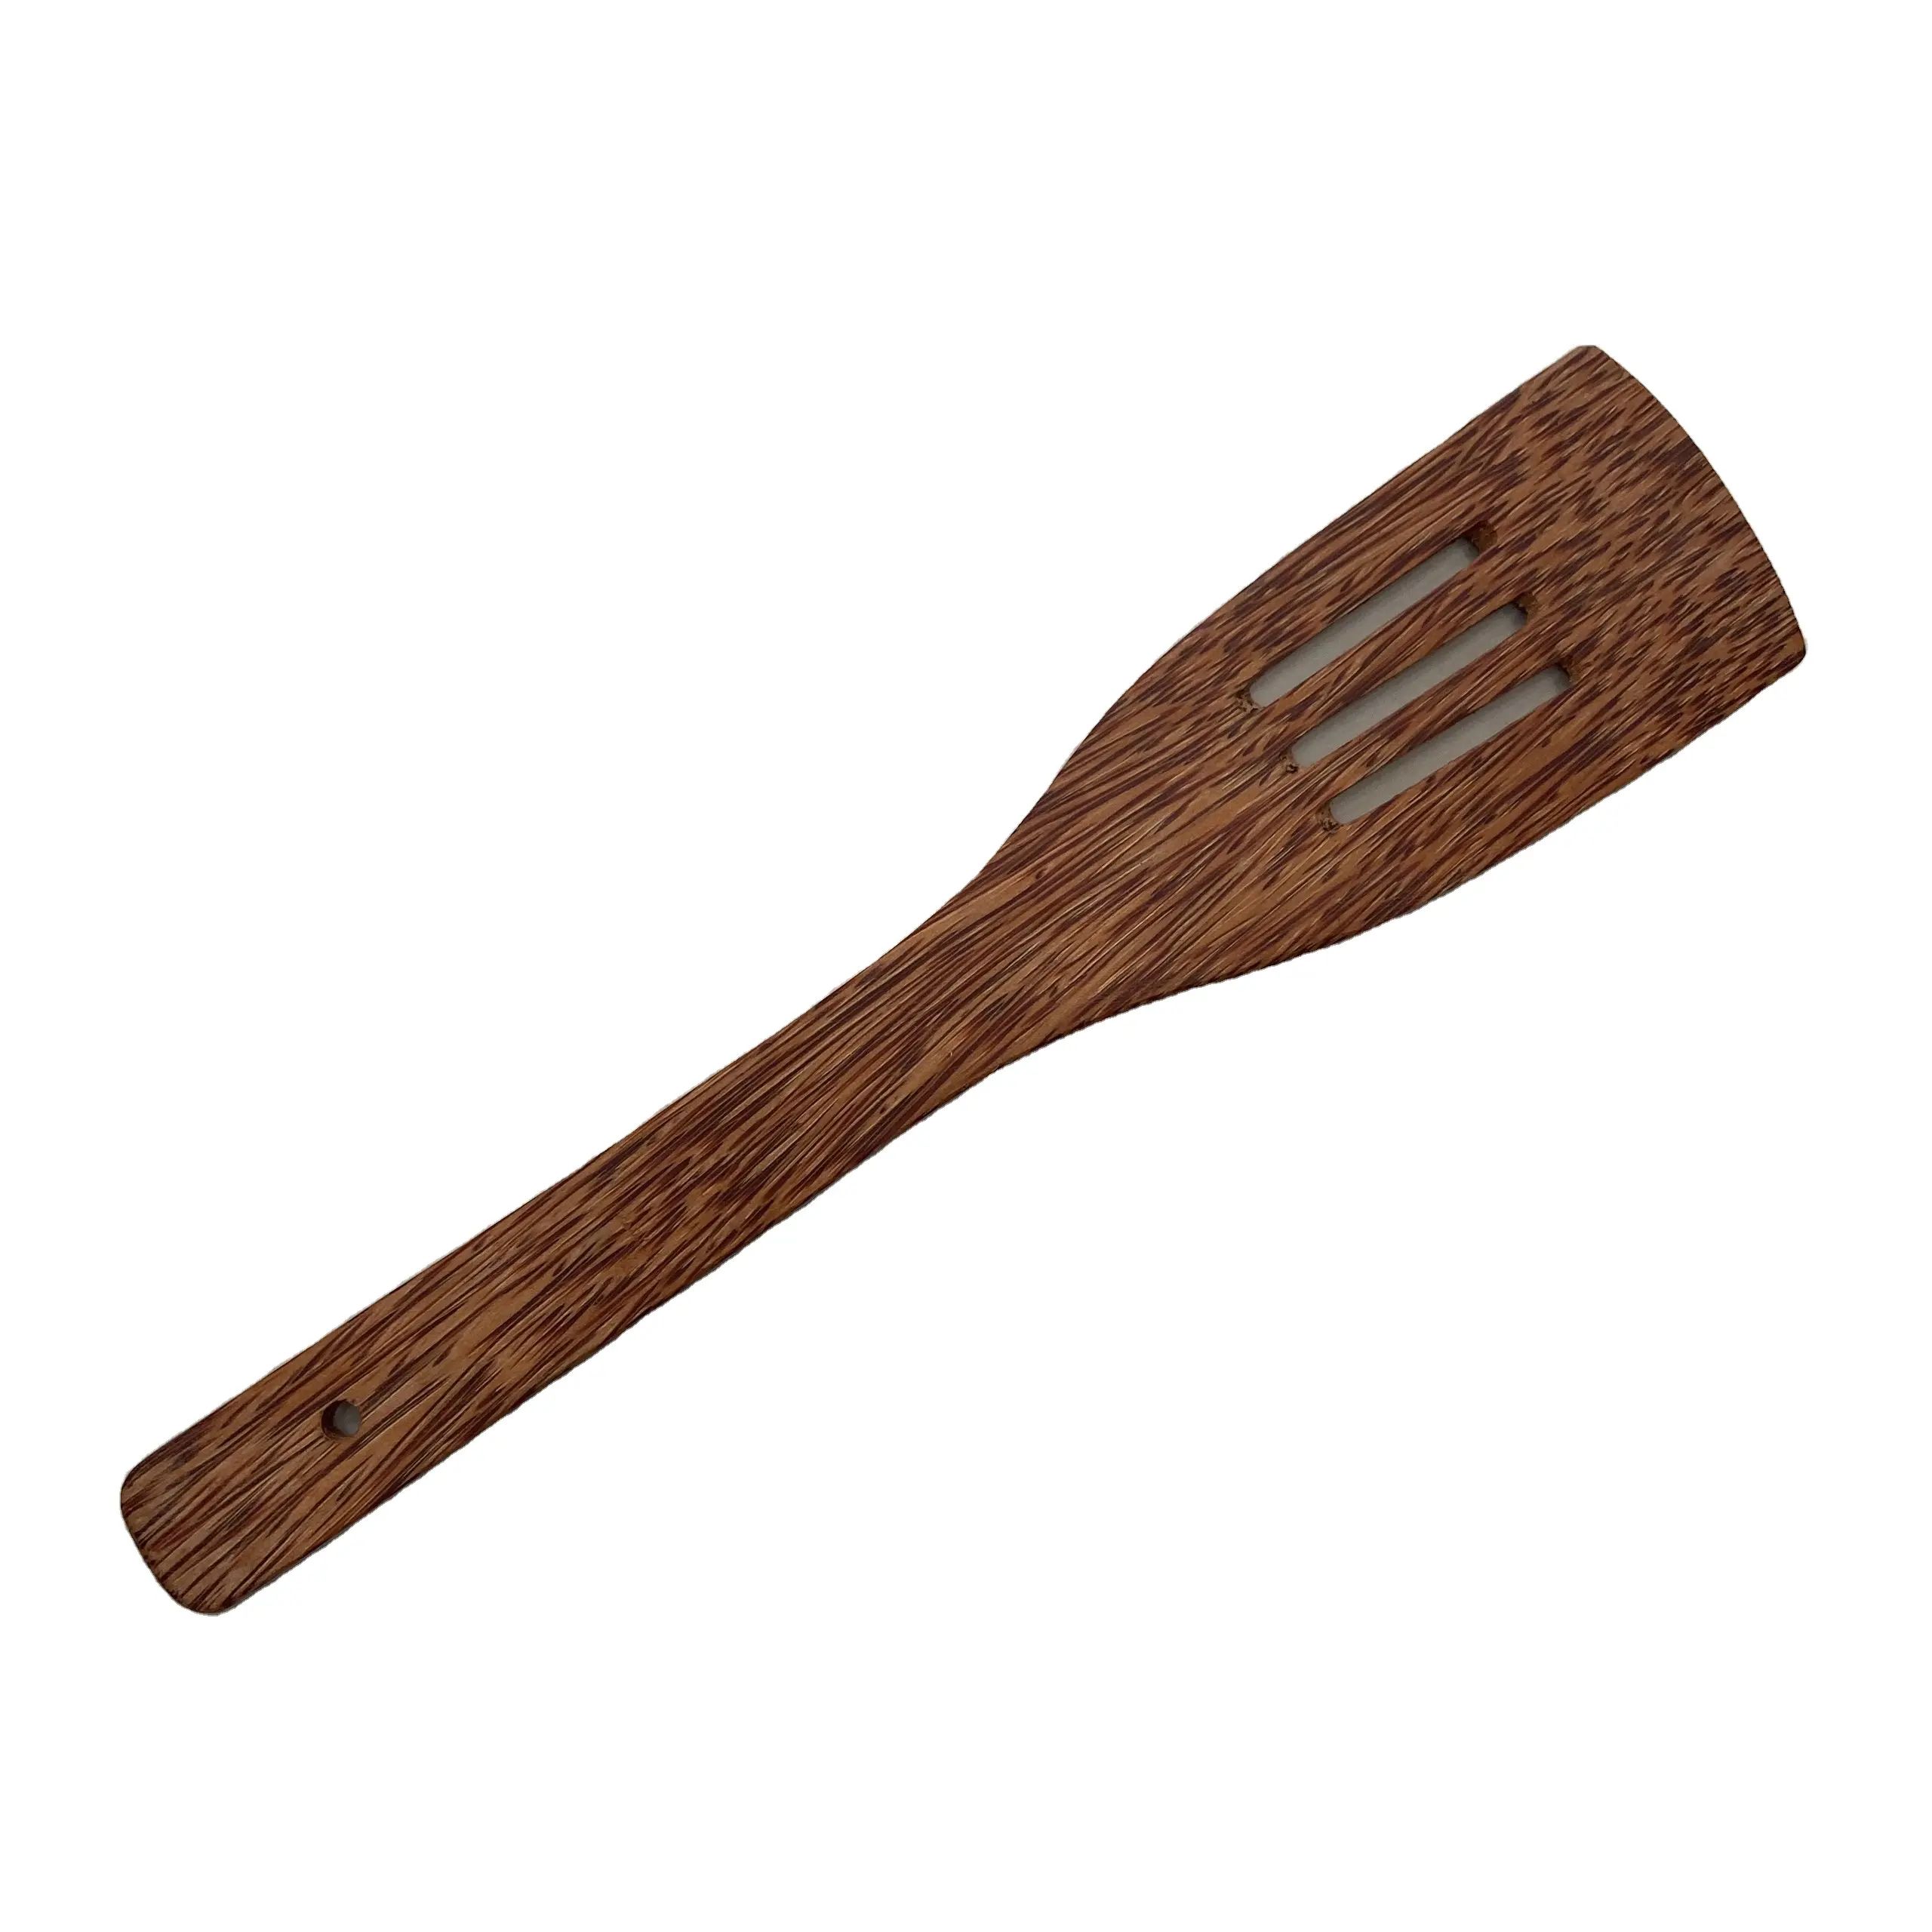 De coco al por mayor de madera utensilio de cocina/madera económica espátulas cocina/comedor utensilio conjunto